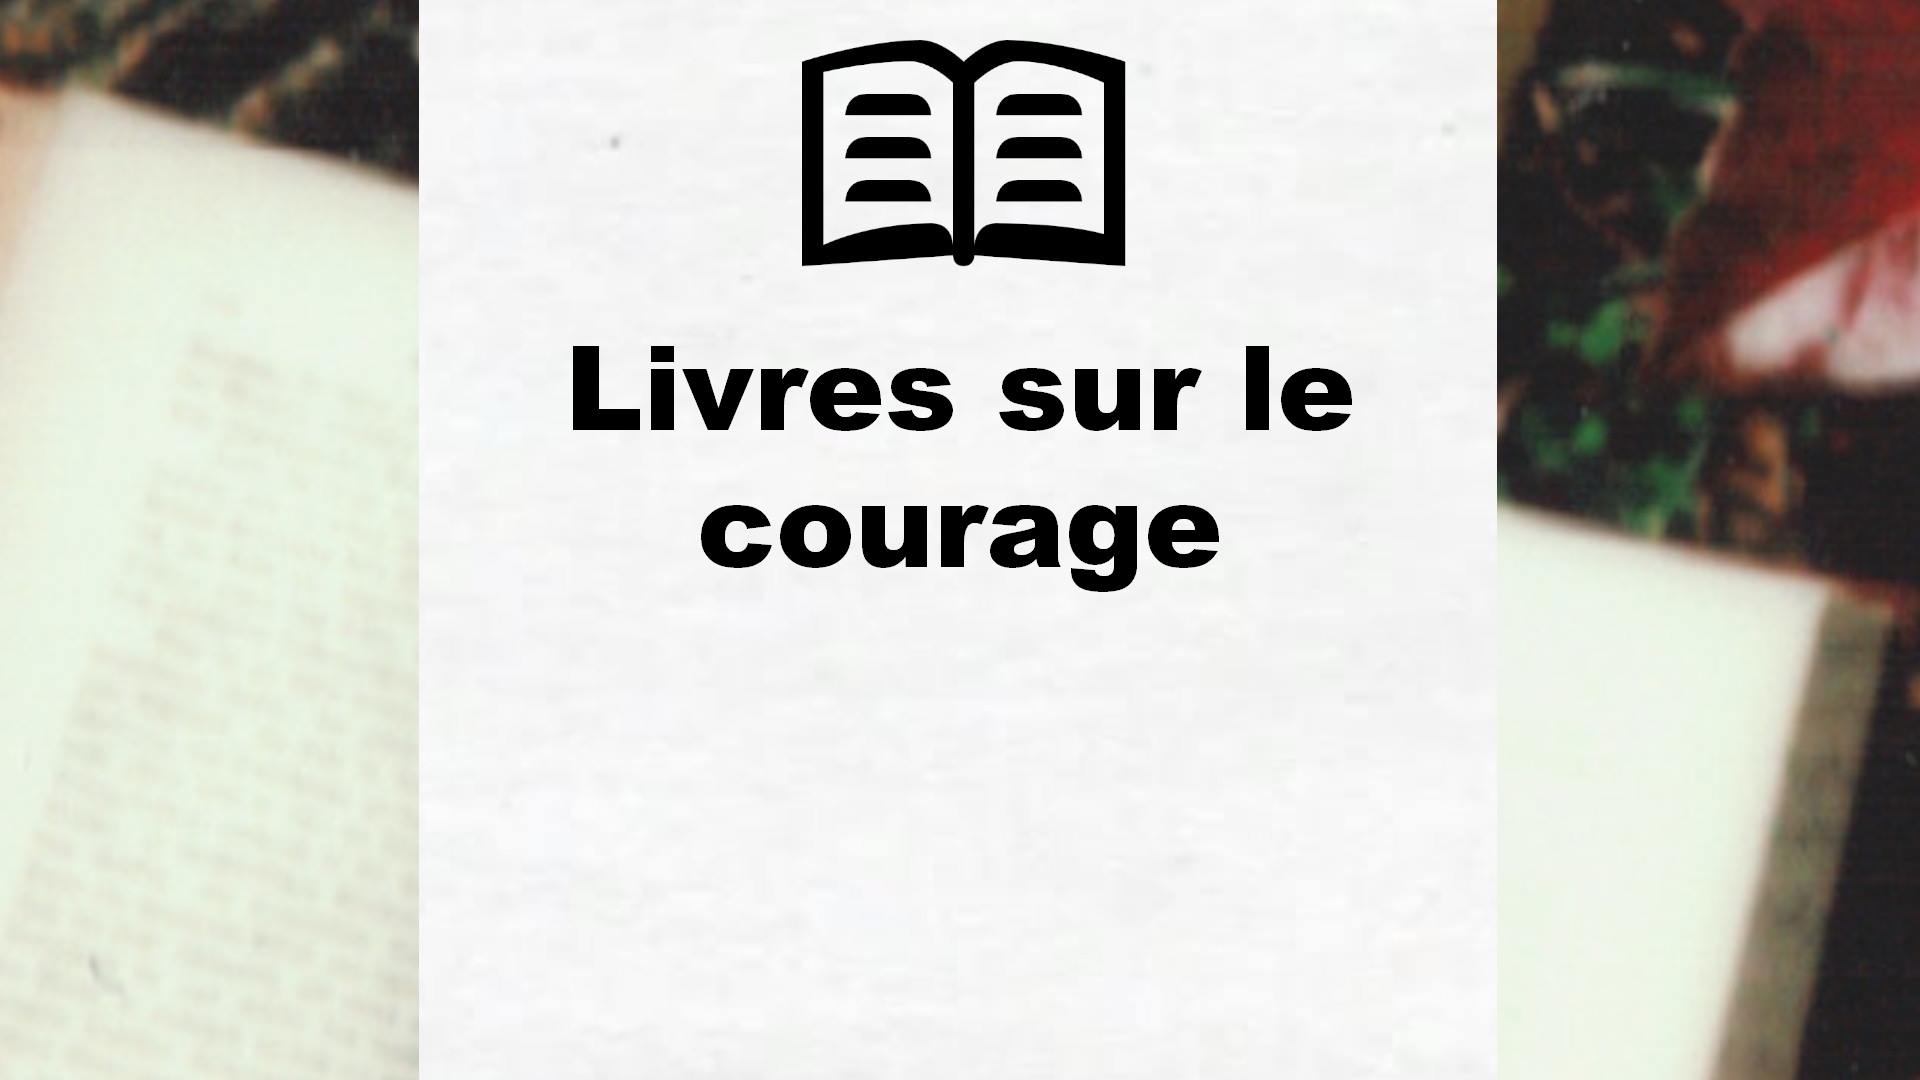 Livres sur le courage